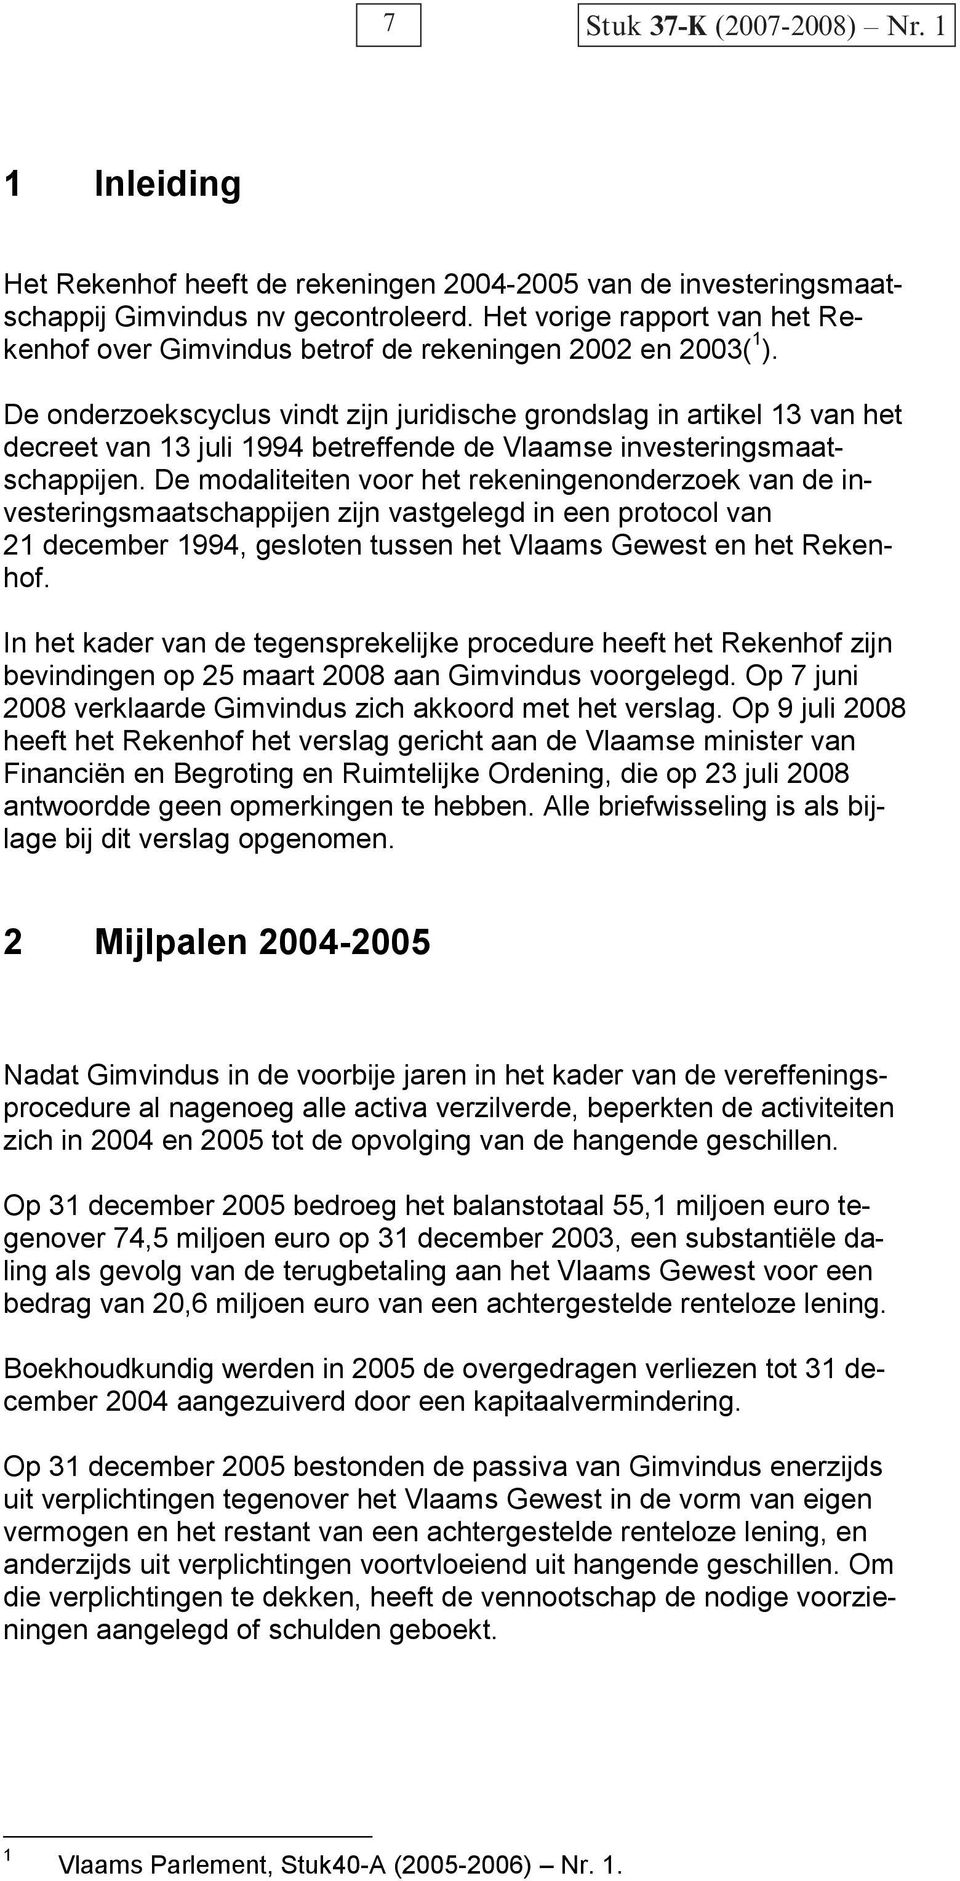 De onderzoekscyclus vindt zijn juridische grondslag in artikel 13 van het decreet van 13 juli 1994 betreffende de Vlaamse investeringsmaatschappijen.